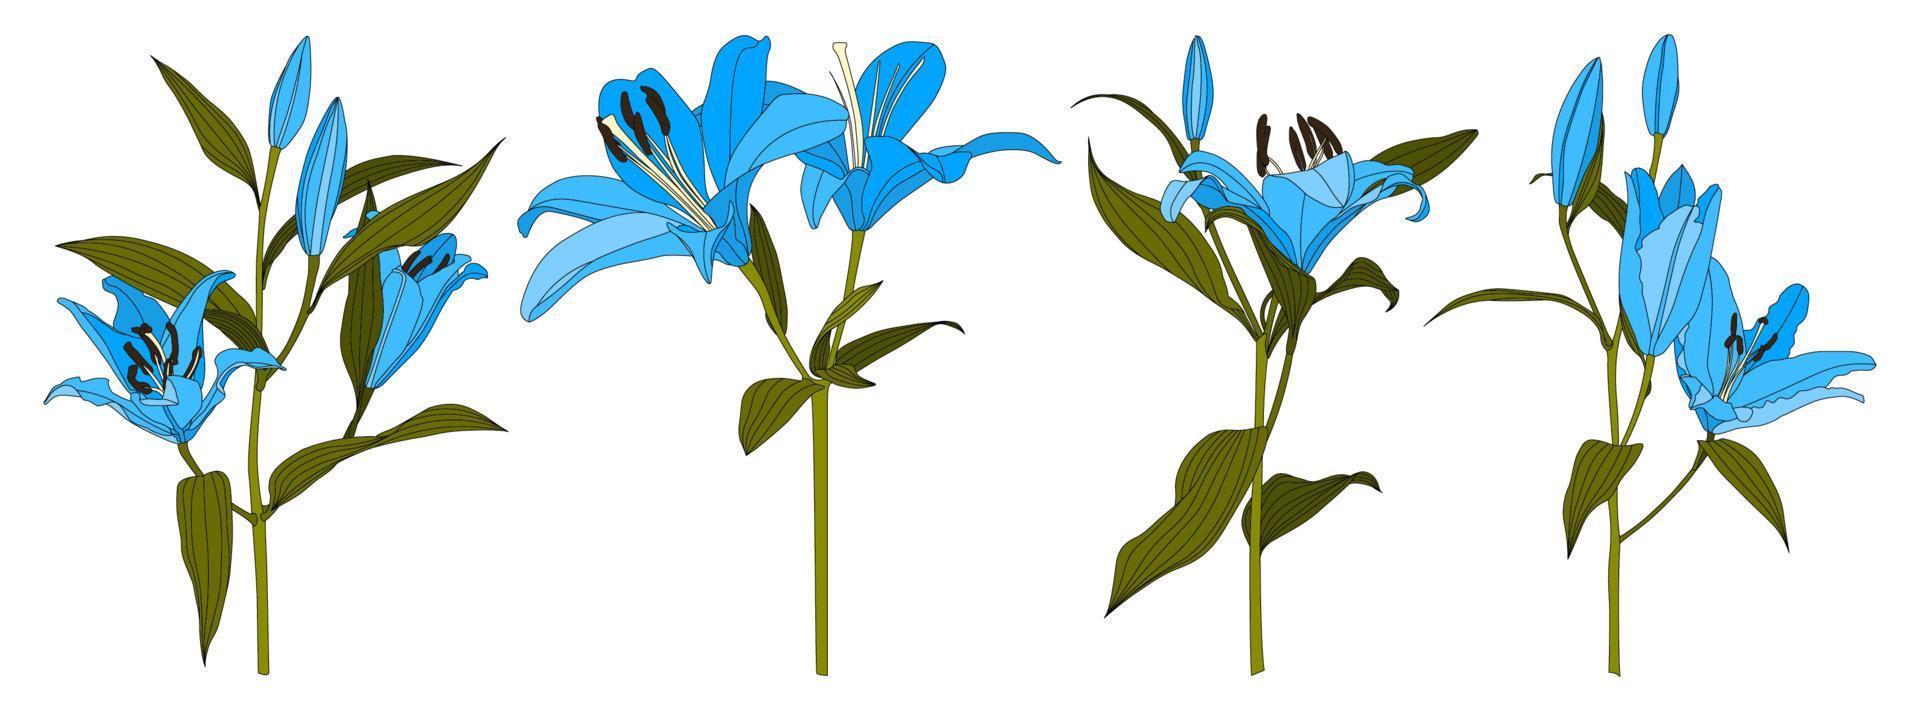 Satz von isolierten handgezeichneten hellblauen Lilienblumenvektoren vektor